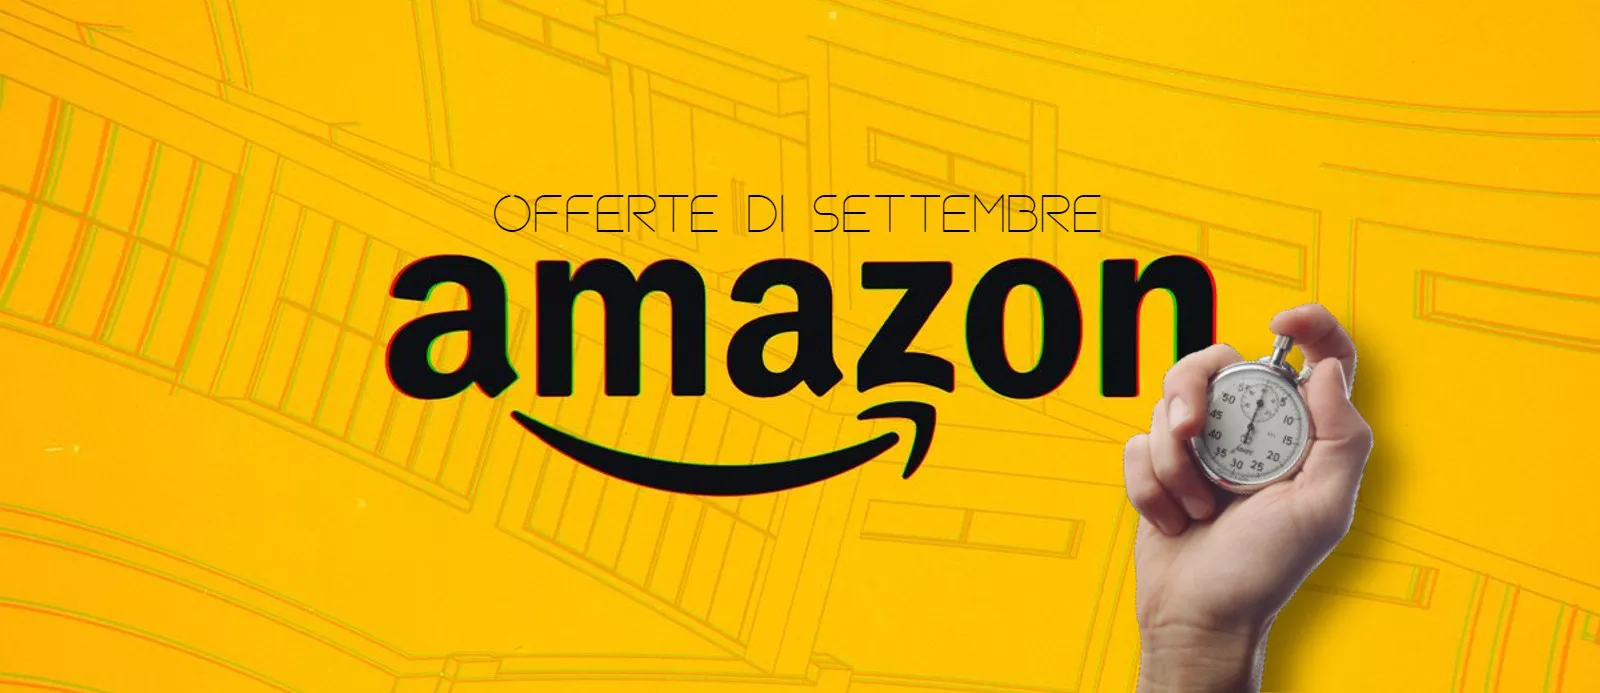 Amazon, ultimo giorno sconti di settembre: le 5 offerte da non lasciarsi sfuggire